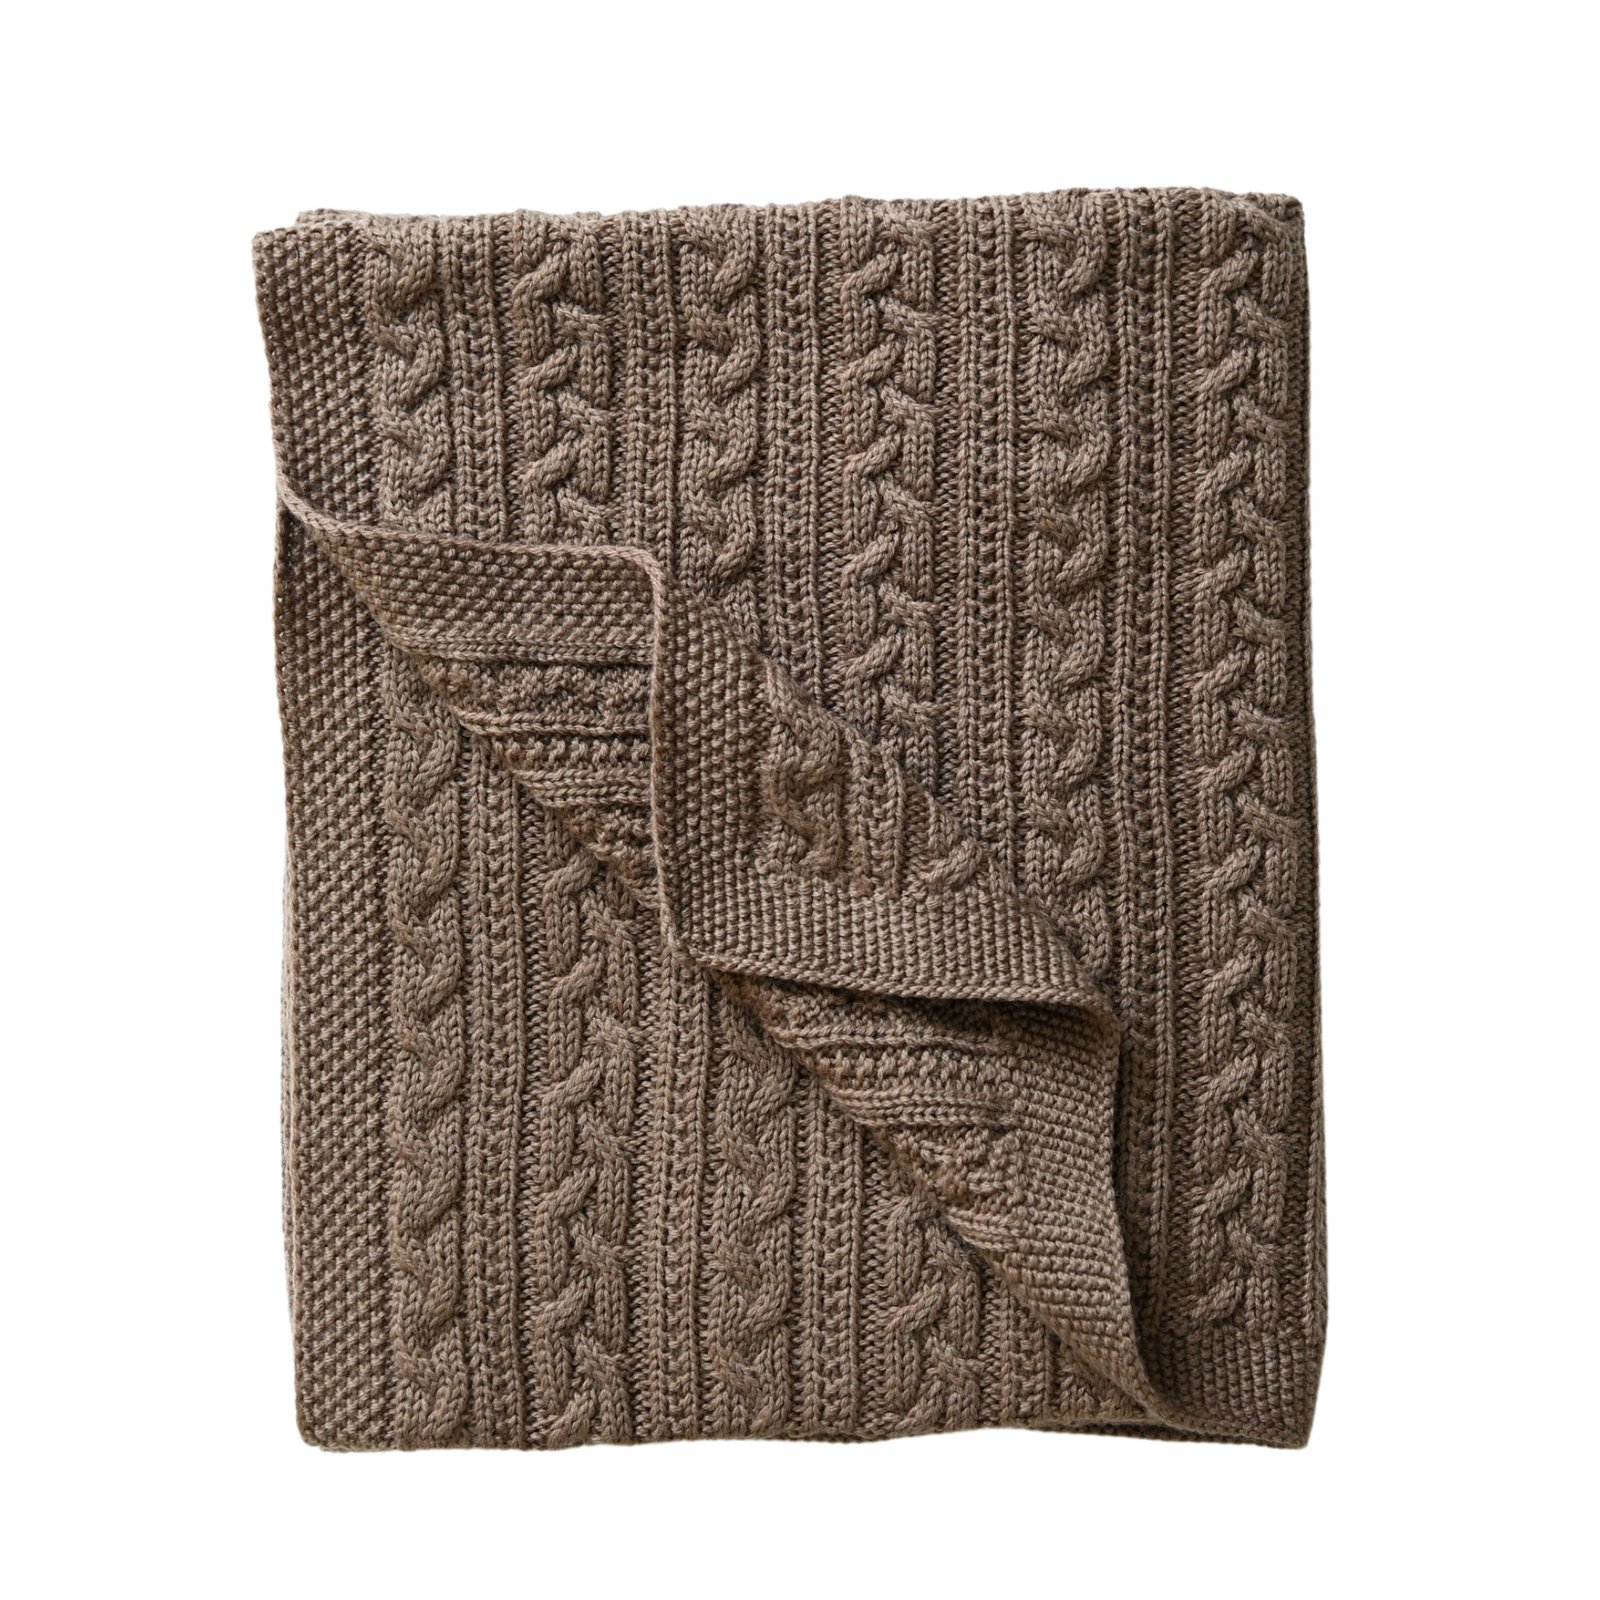 Jack o Juno Knitted Merino Wool Blanket Cookie